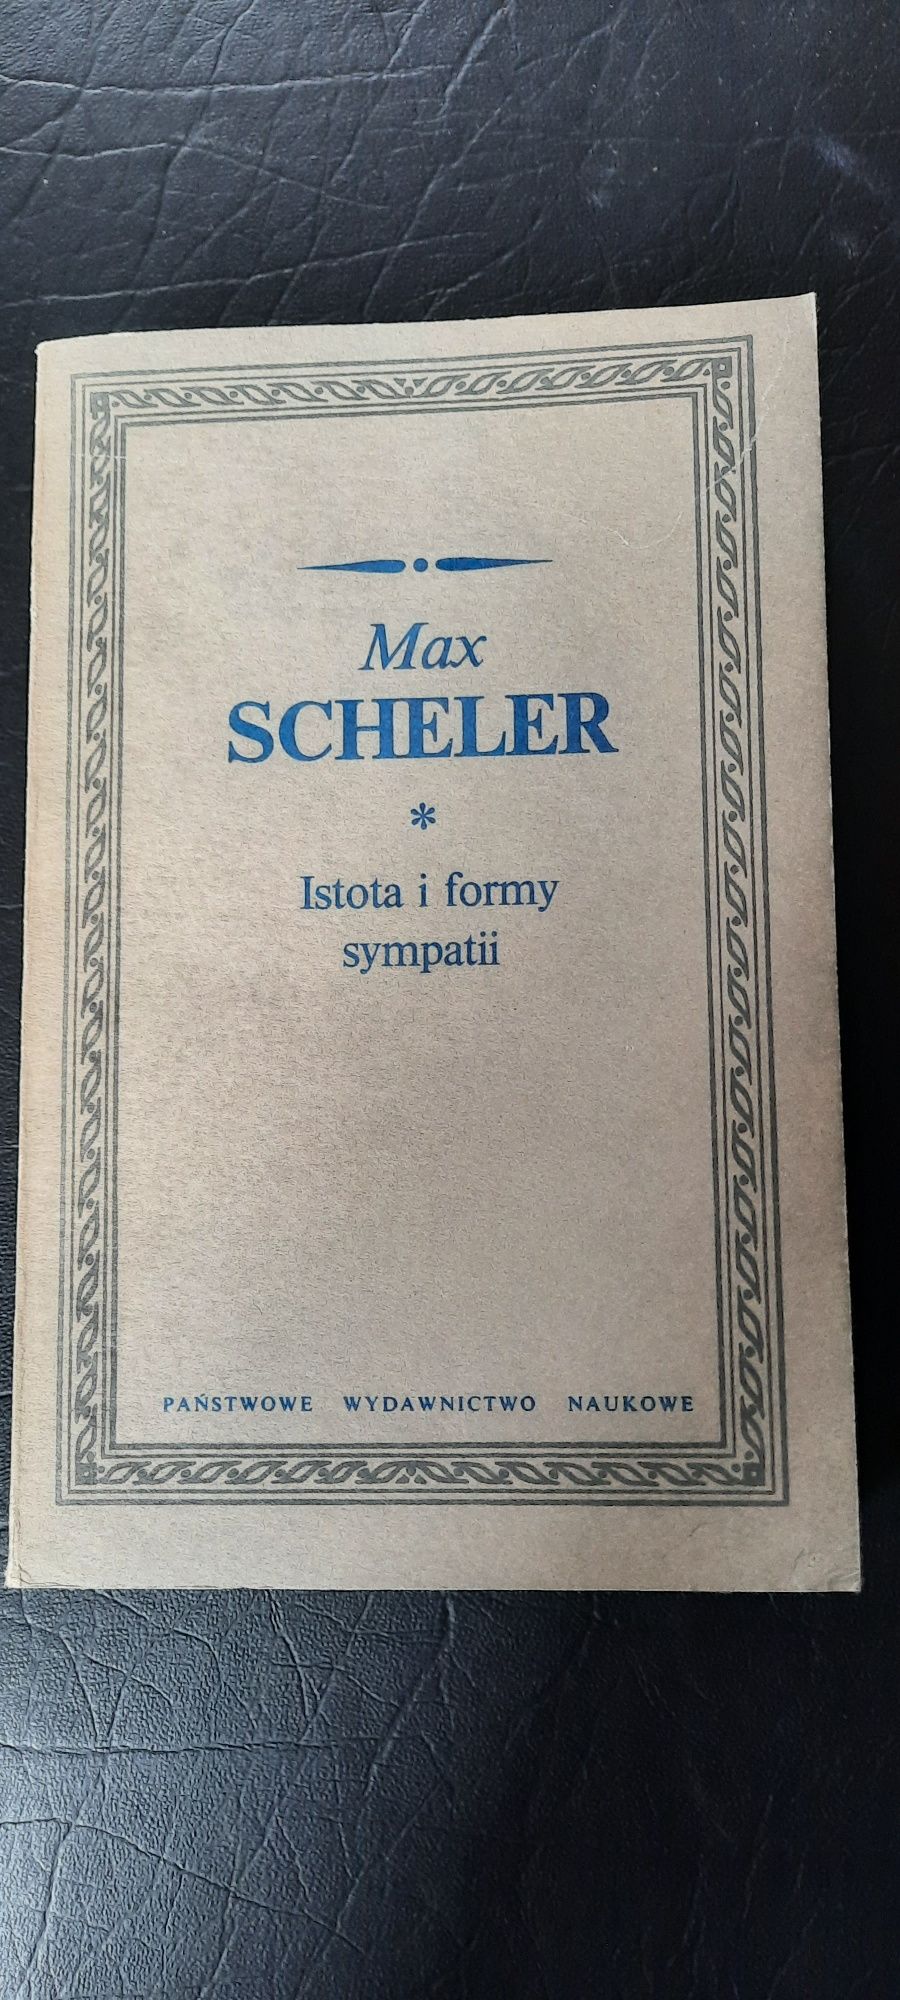 Max scheler istota i formy sympatii Książka filozofia filozoficzna